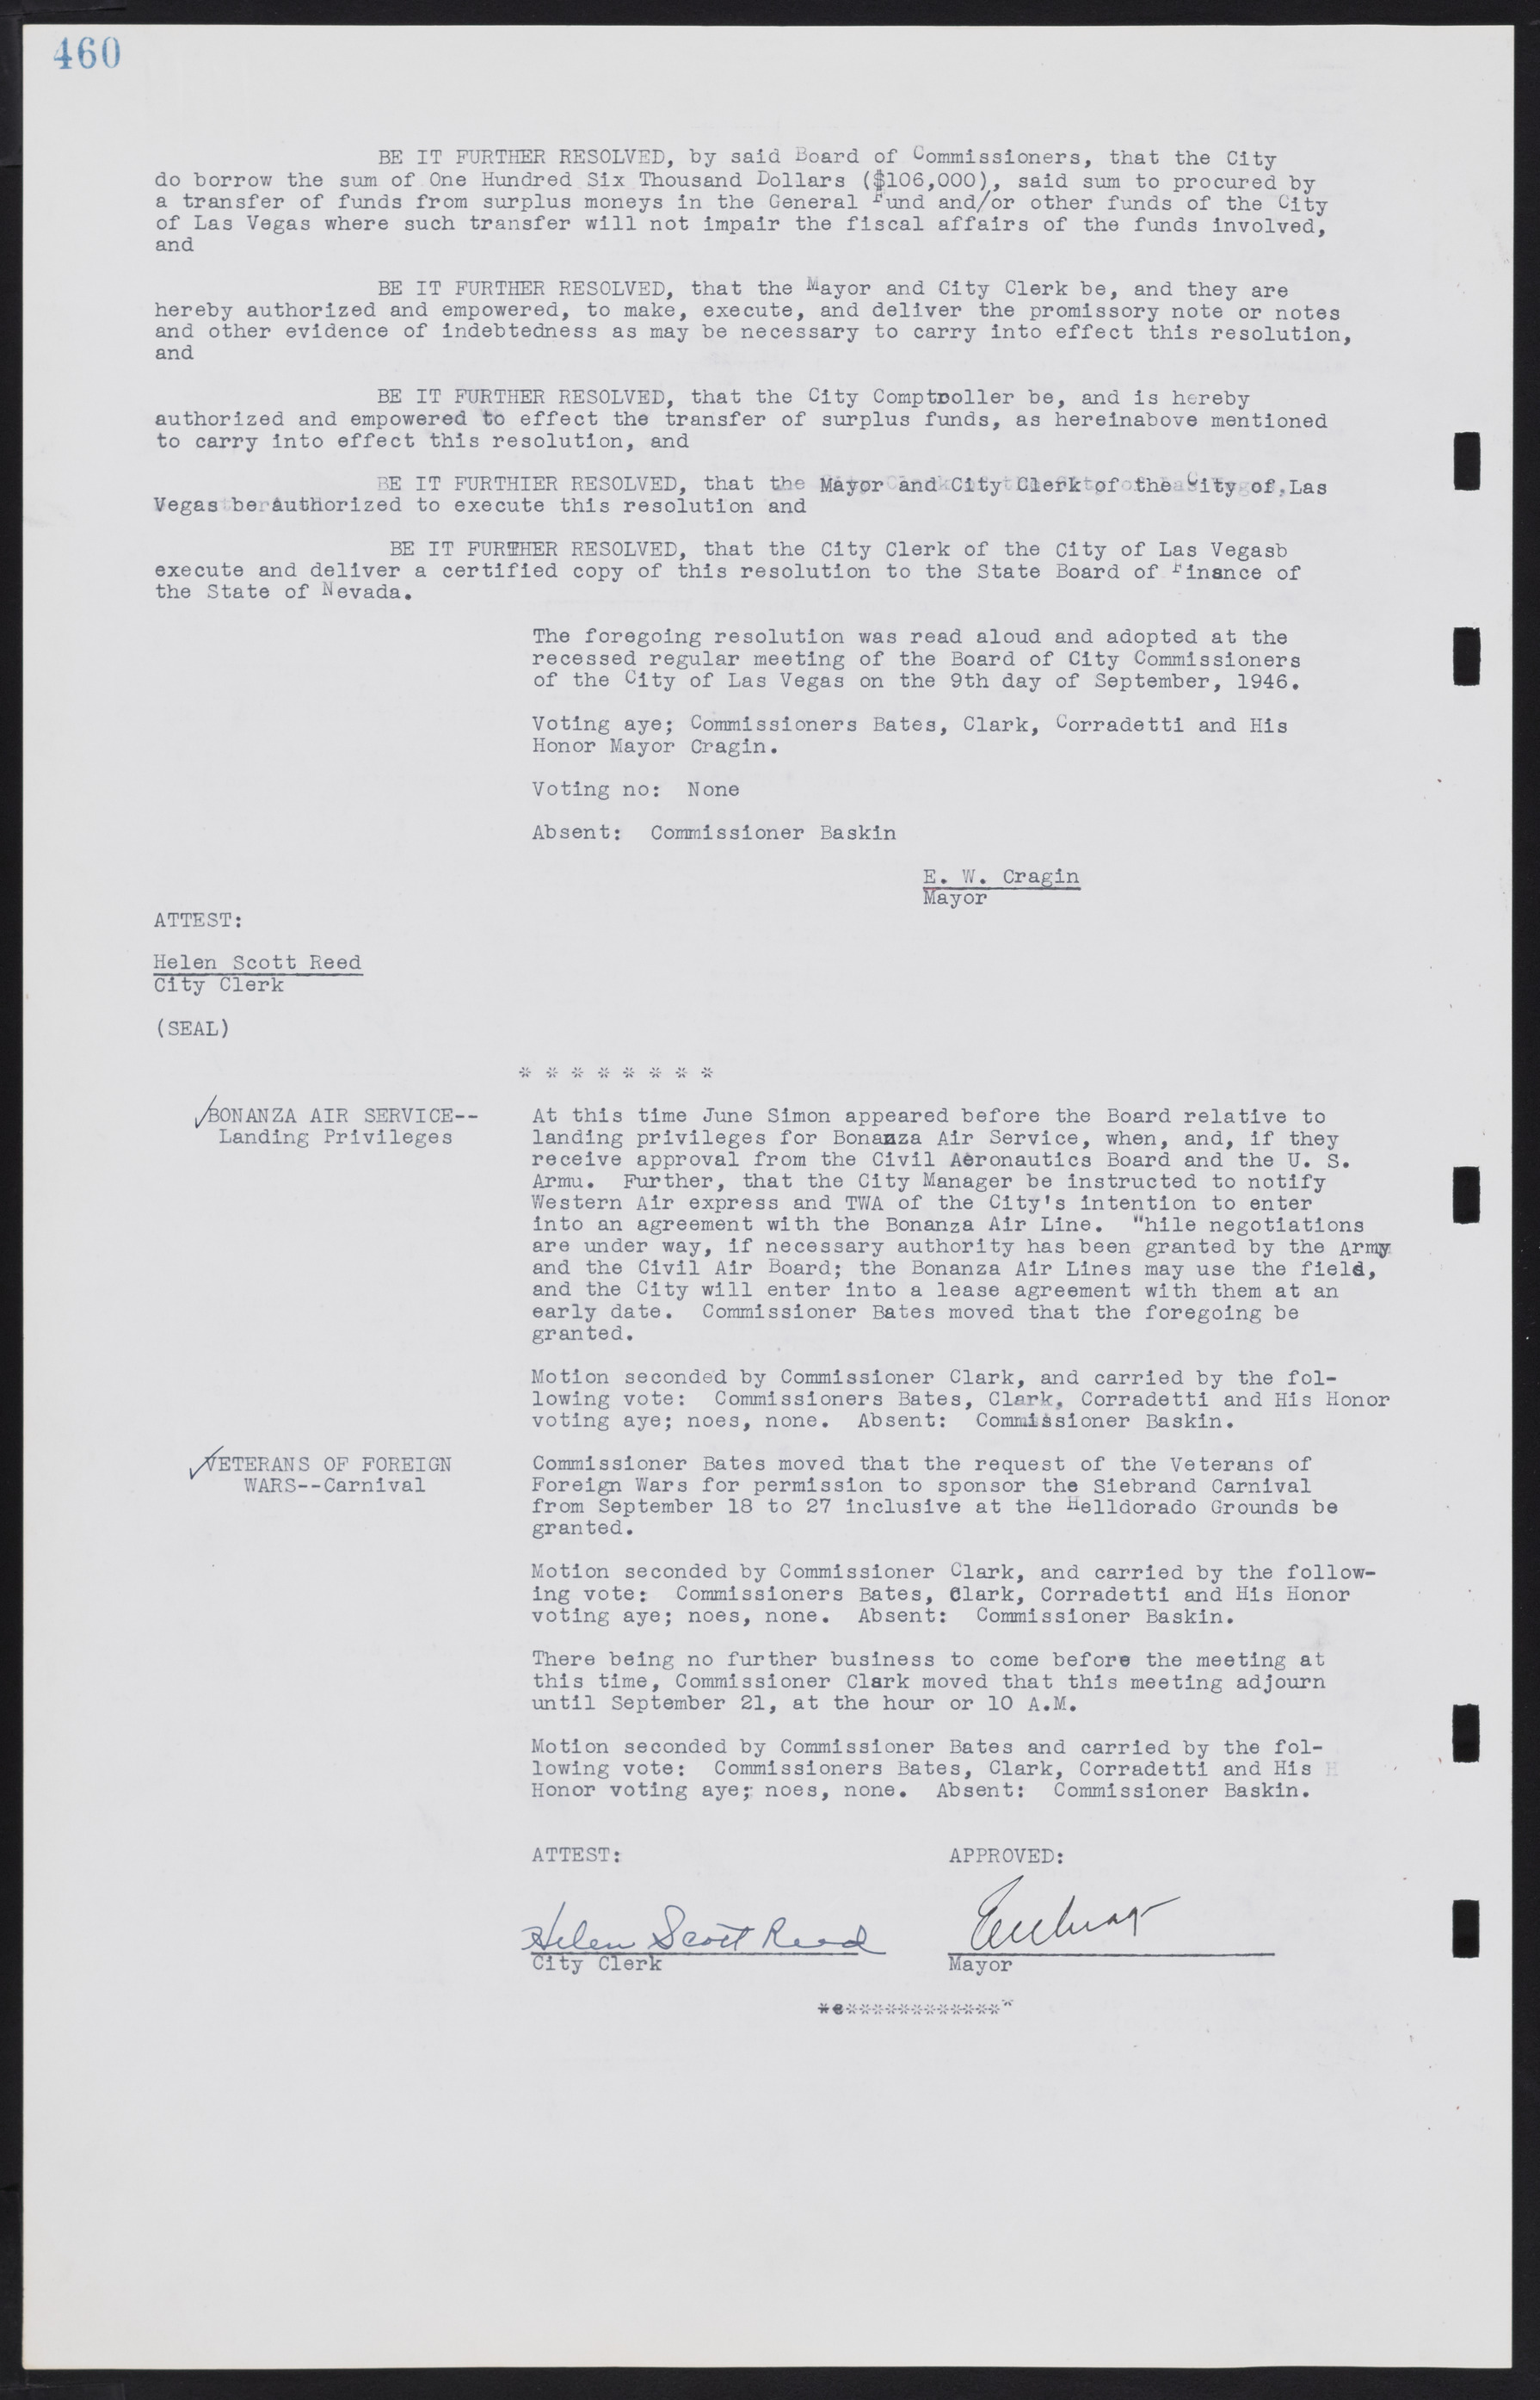 Las Vegas City Commission Minutes, August 11, 1942 to December 30, 1946, lvc000005-491